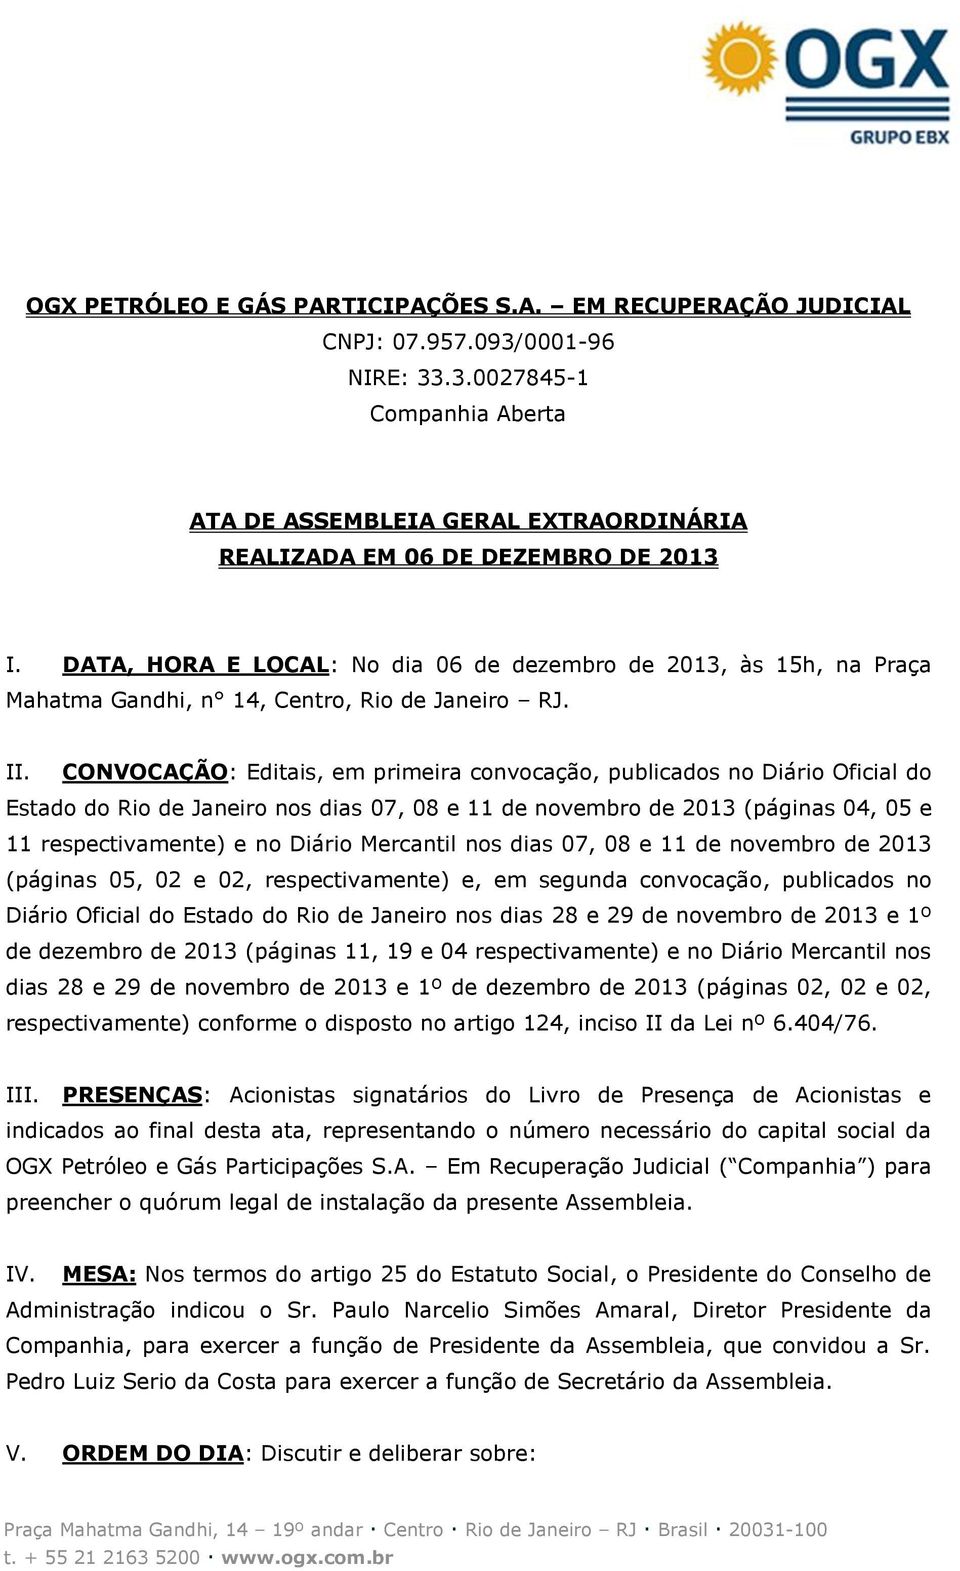 CONVOCAÇÃO: Editais, em primeira convocação, publicados no Diário Oficial do Estado do Rio de Janeiro nos dias 07, 08 e 11 de novembro de 2013 (páginas 04, 05 e 11 respectivamente) e no Diário